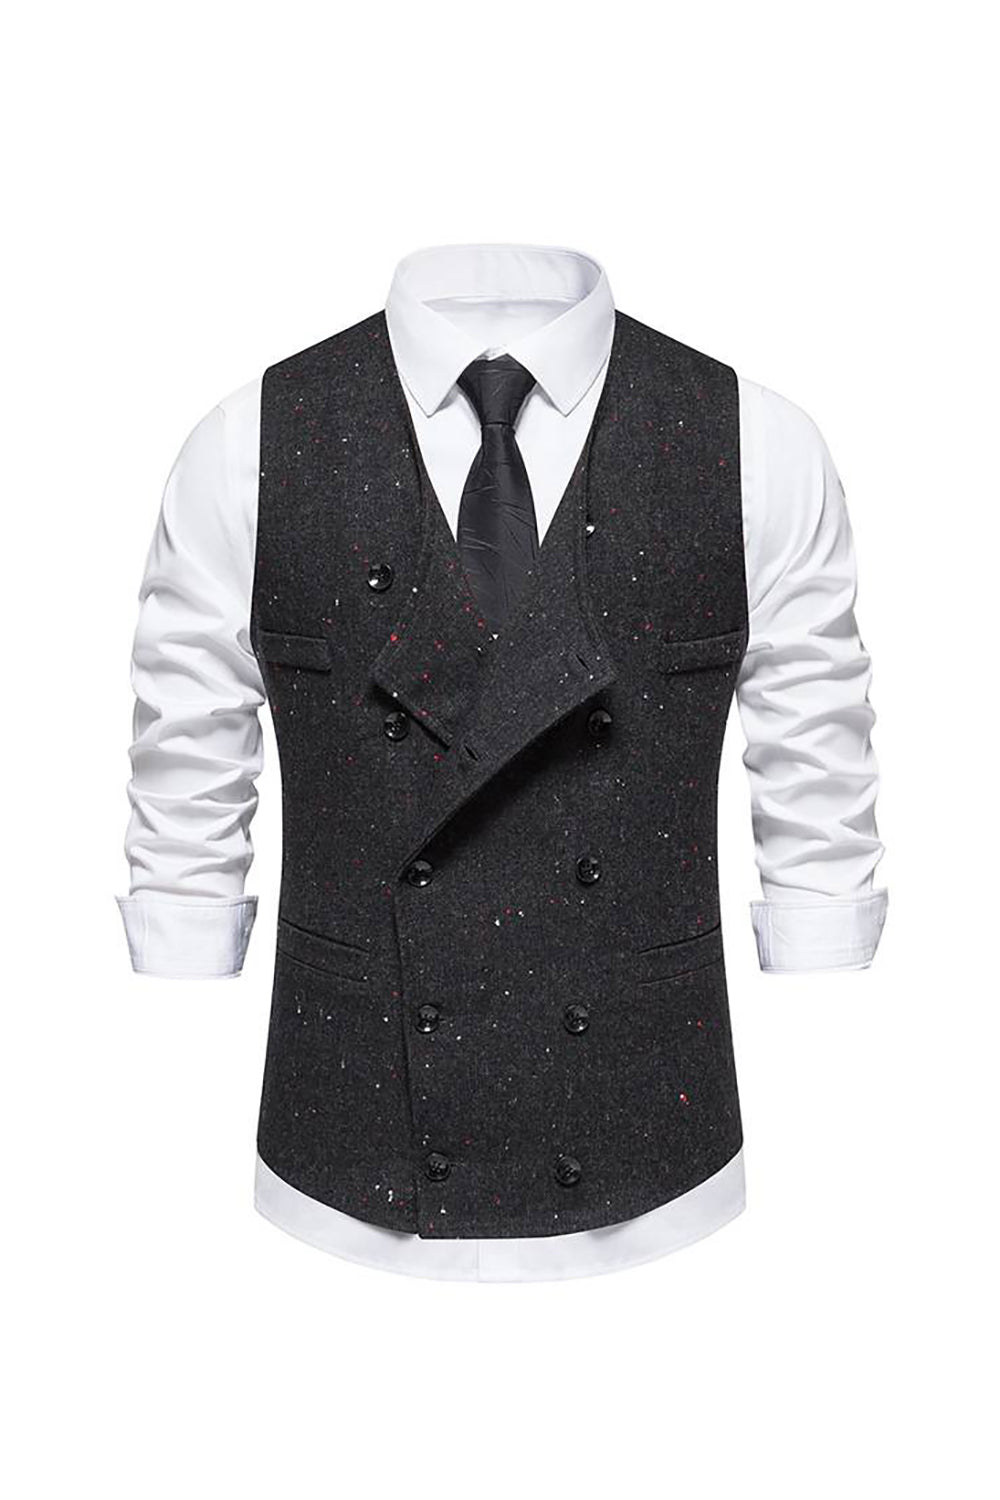 Black Retro Double Breasted Shawl Lapel Men's Suit Vest